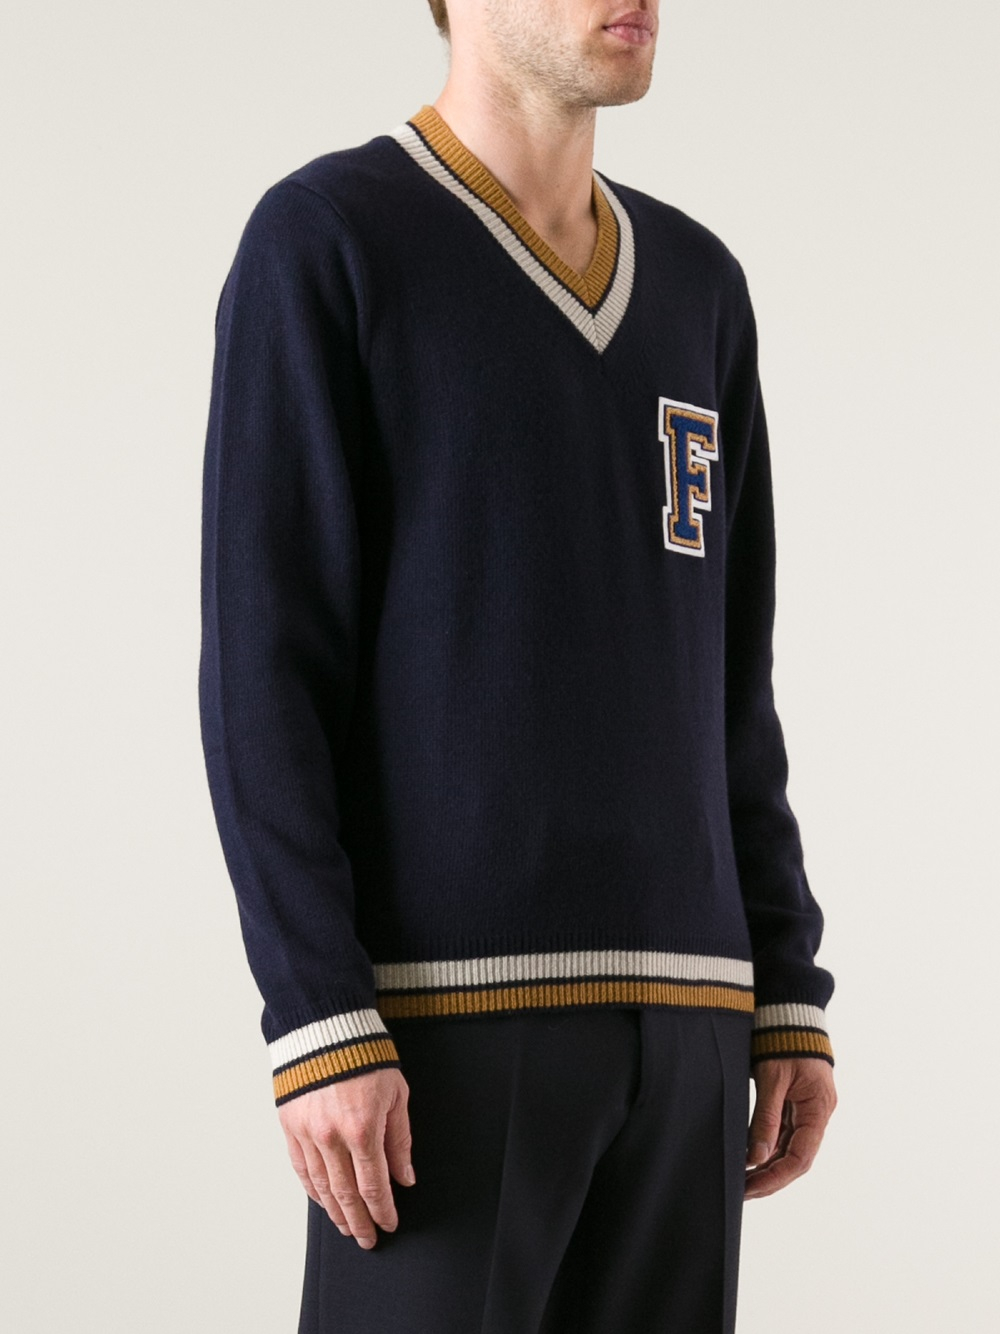 Raf Simons Collegiate Sweater in Blue for Men - Lyst